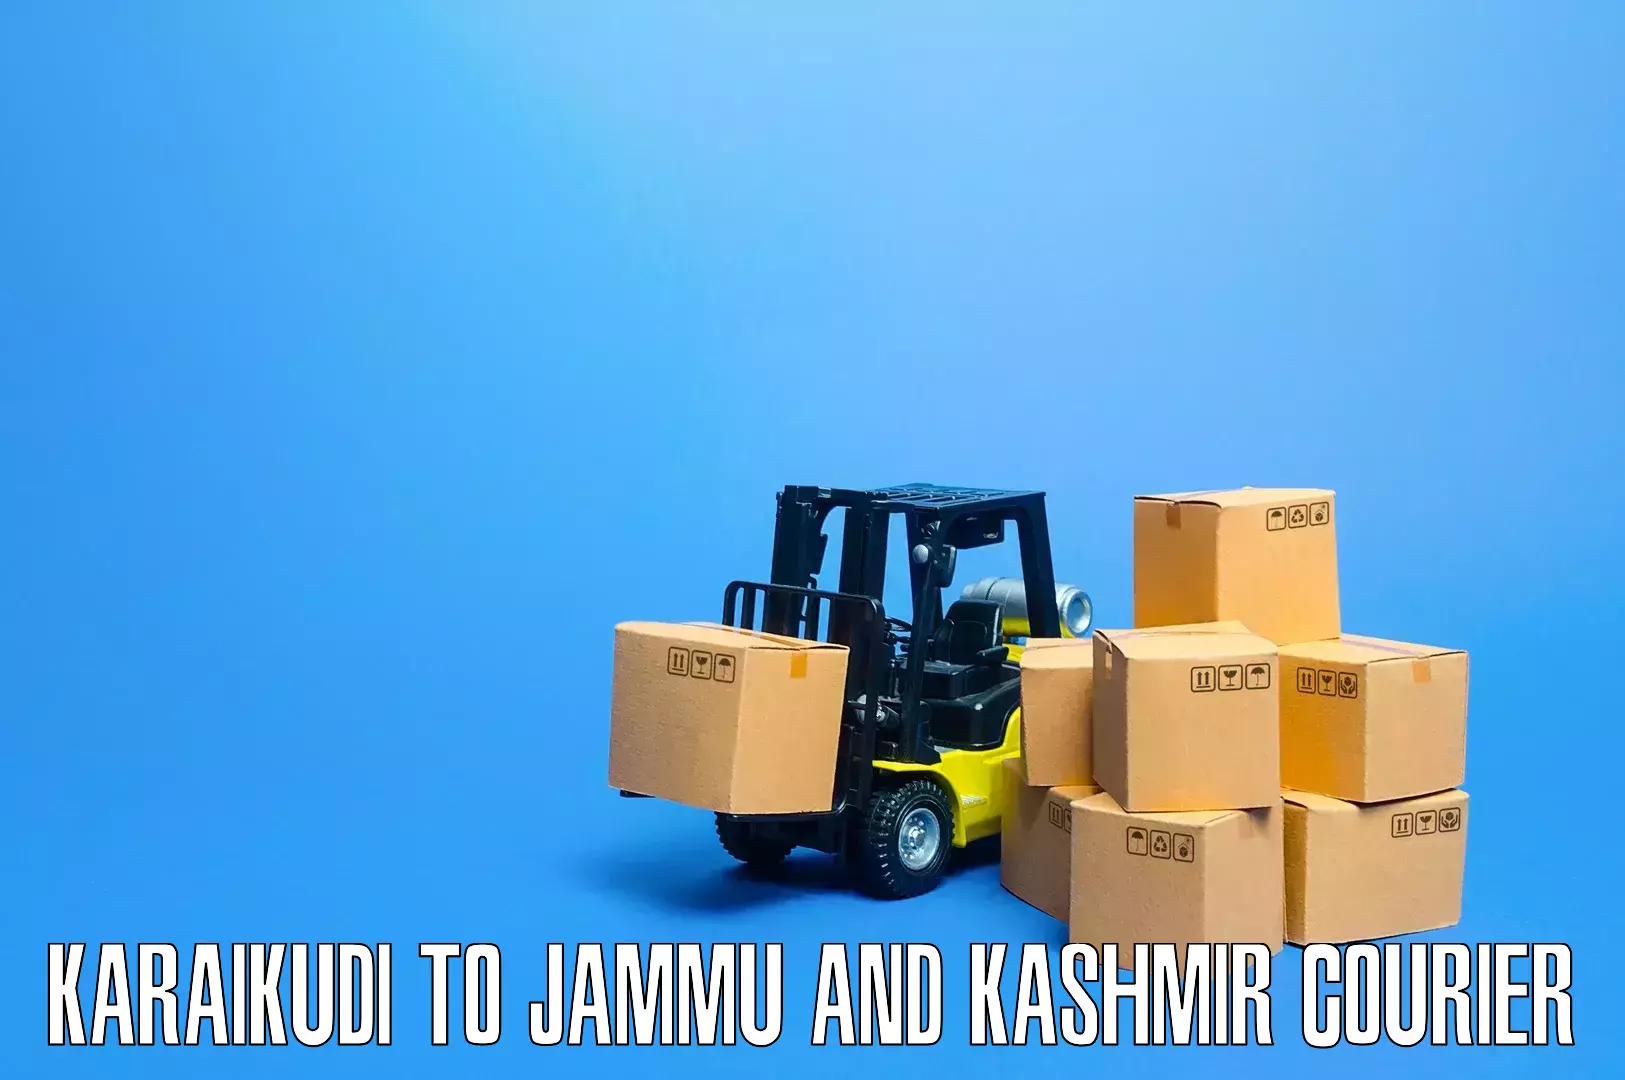 Skilled furniture movers Karaikudi to Jammu